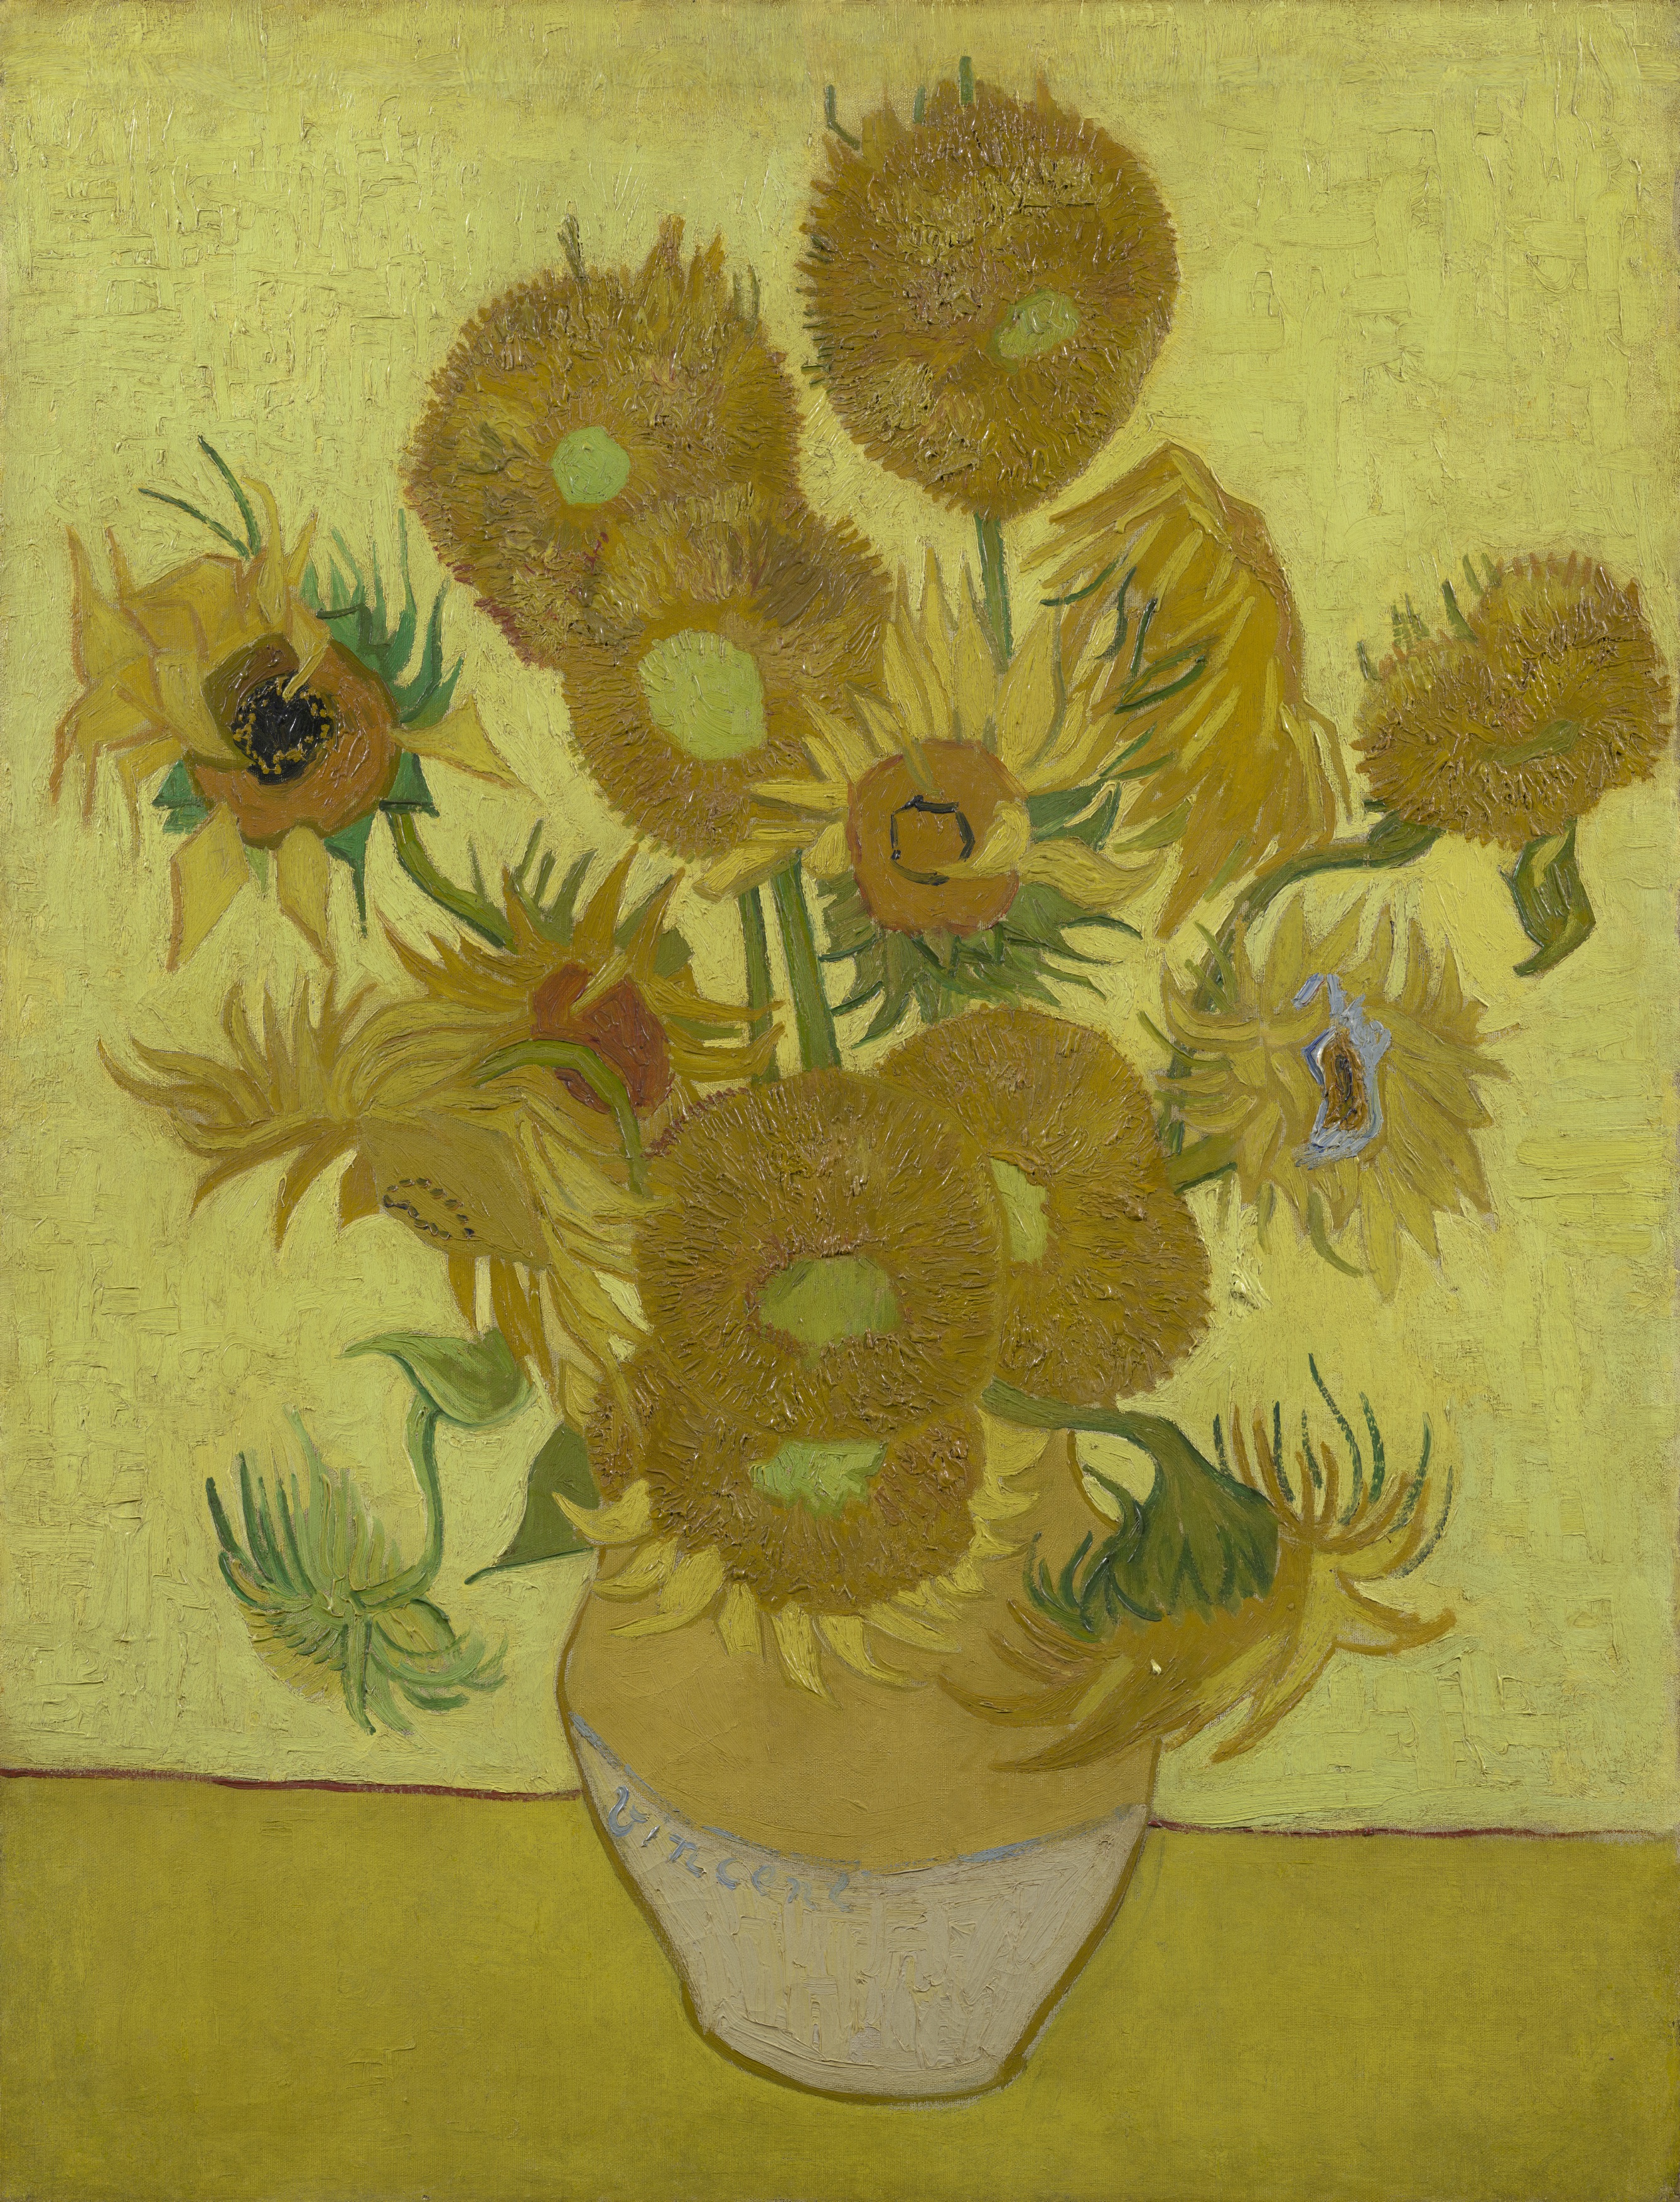 向日葵 by Vincent van Gogh - 1889年1月 - 95  x 73 公分 